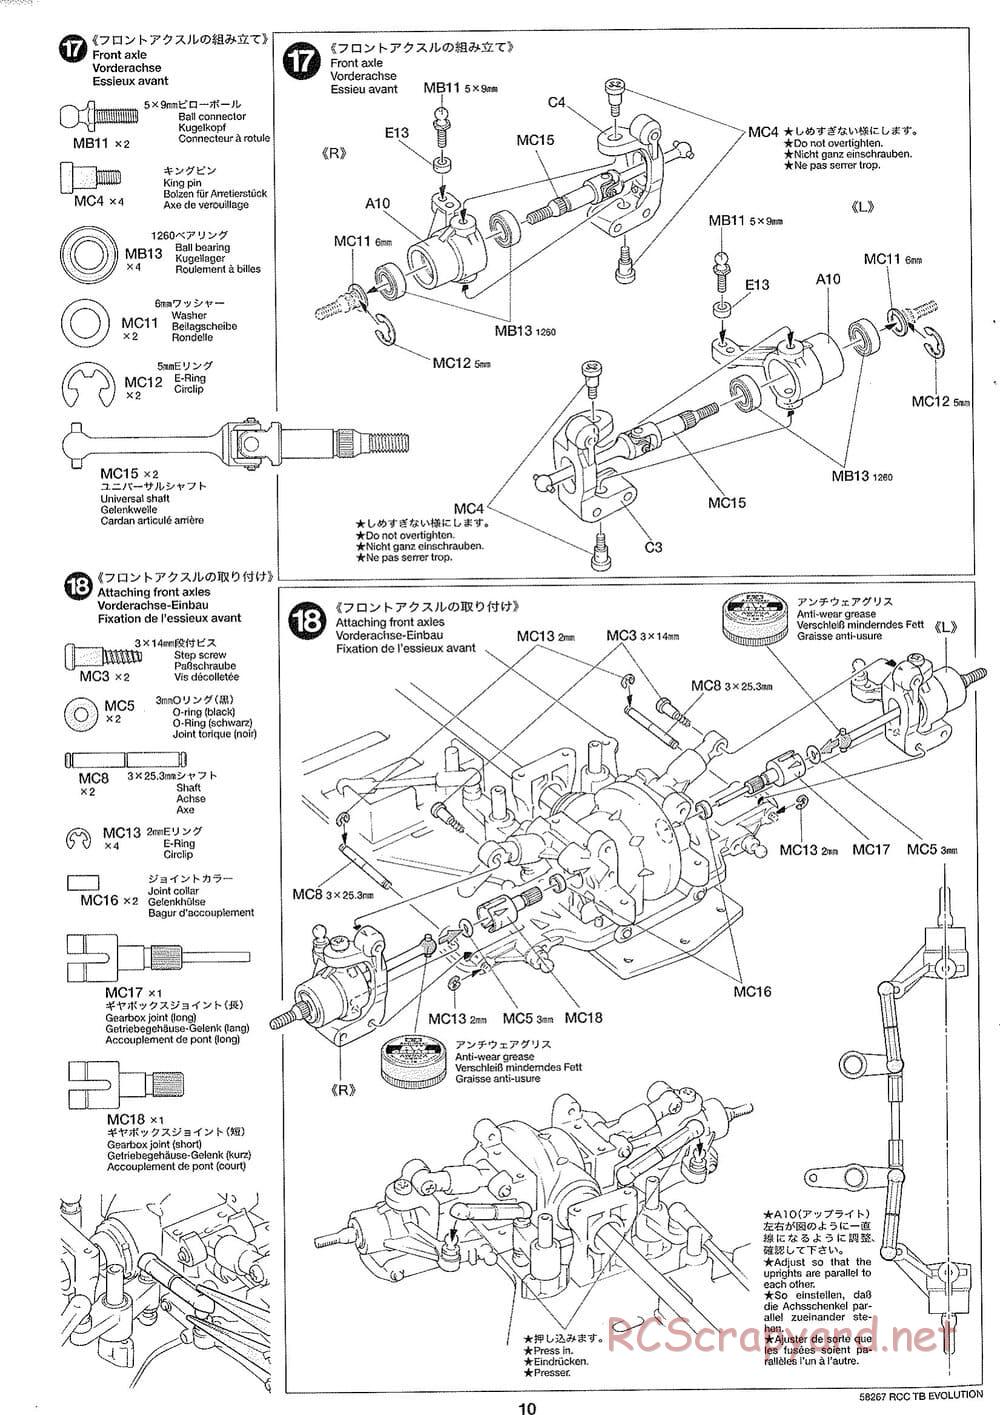 Tamiya - TB Evolution Chassis - Manual - Page 10